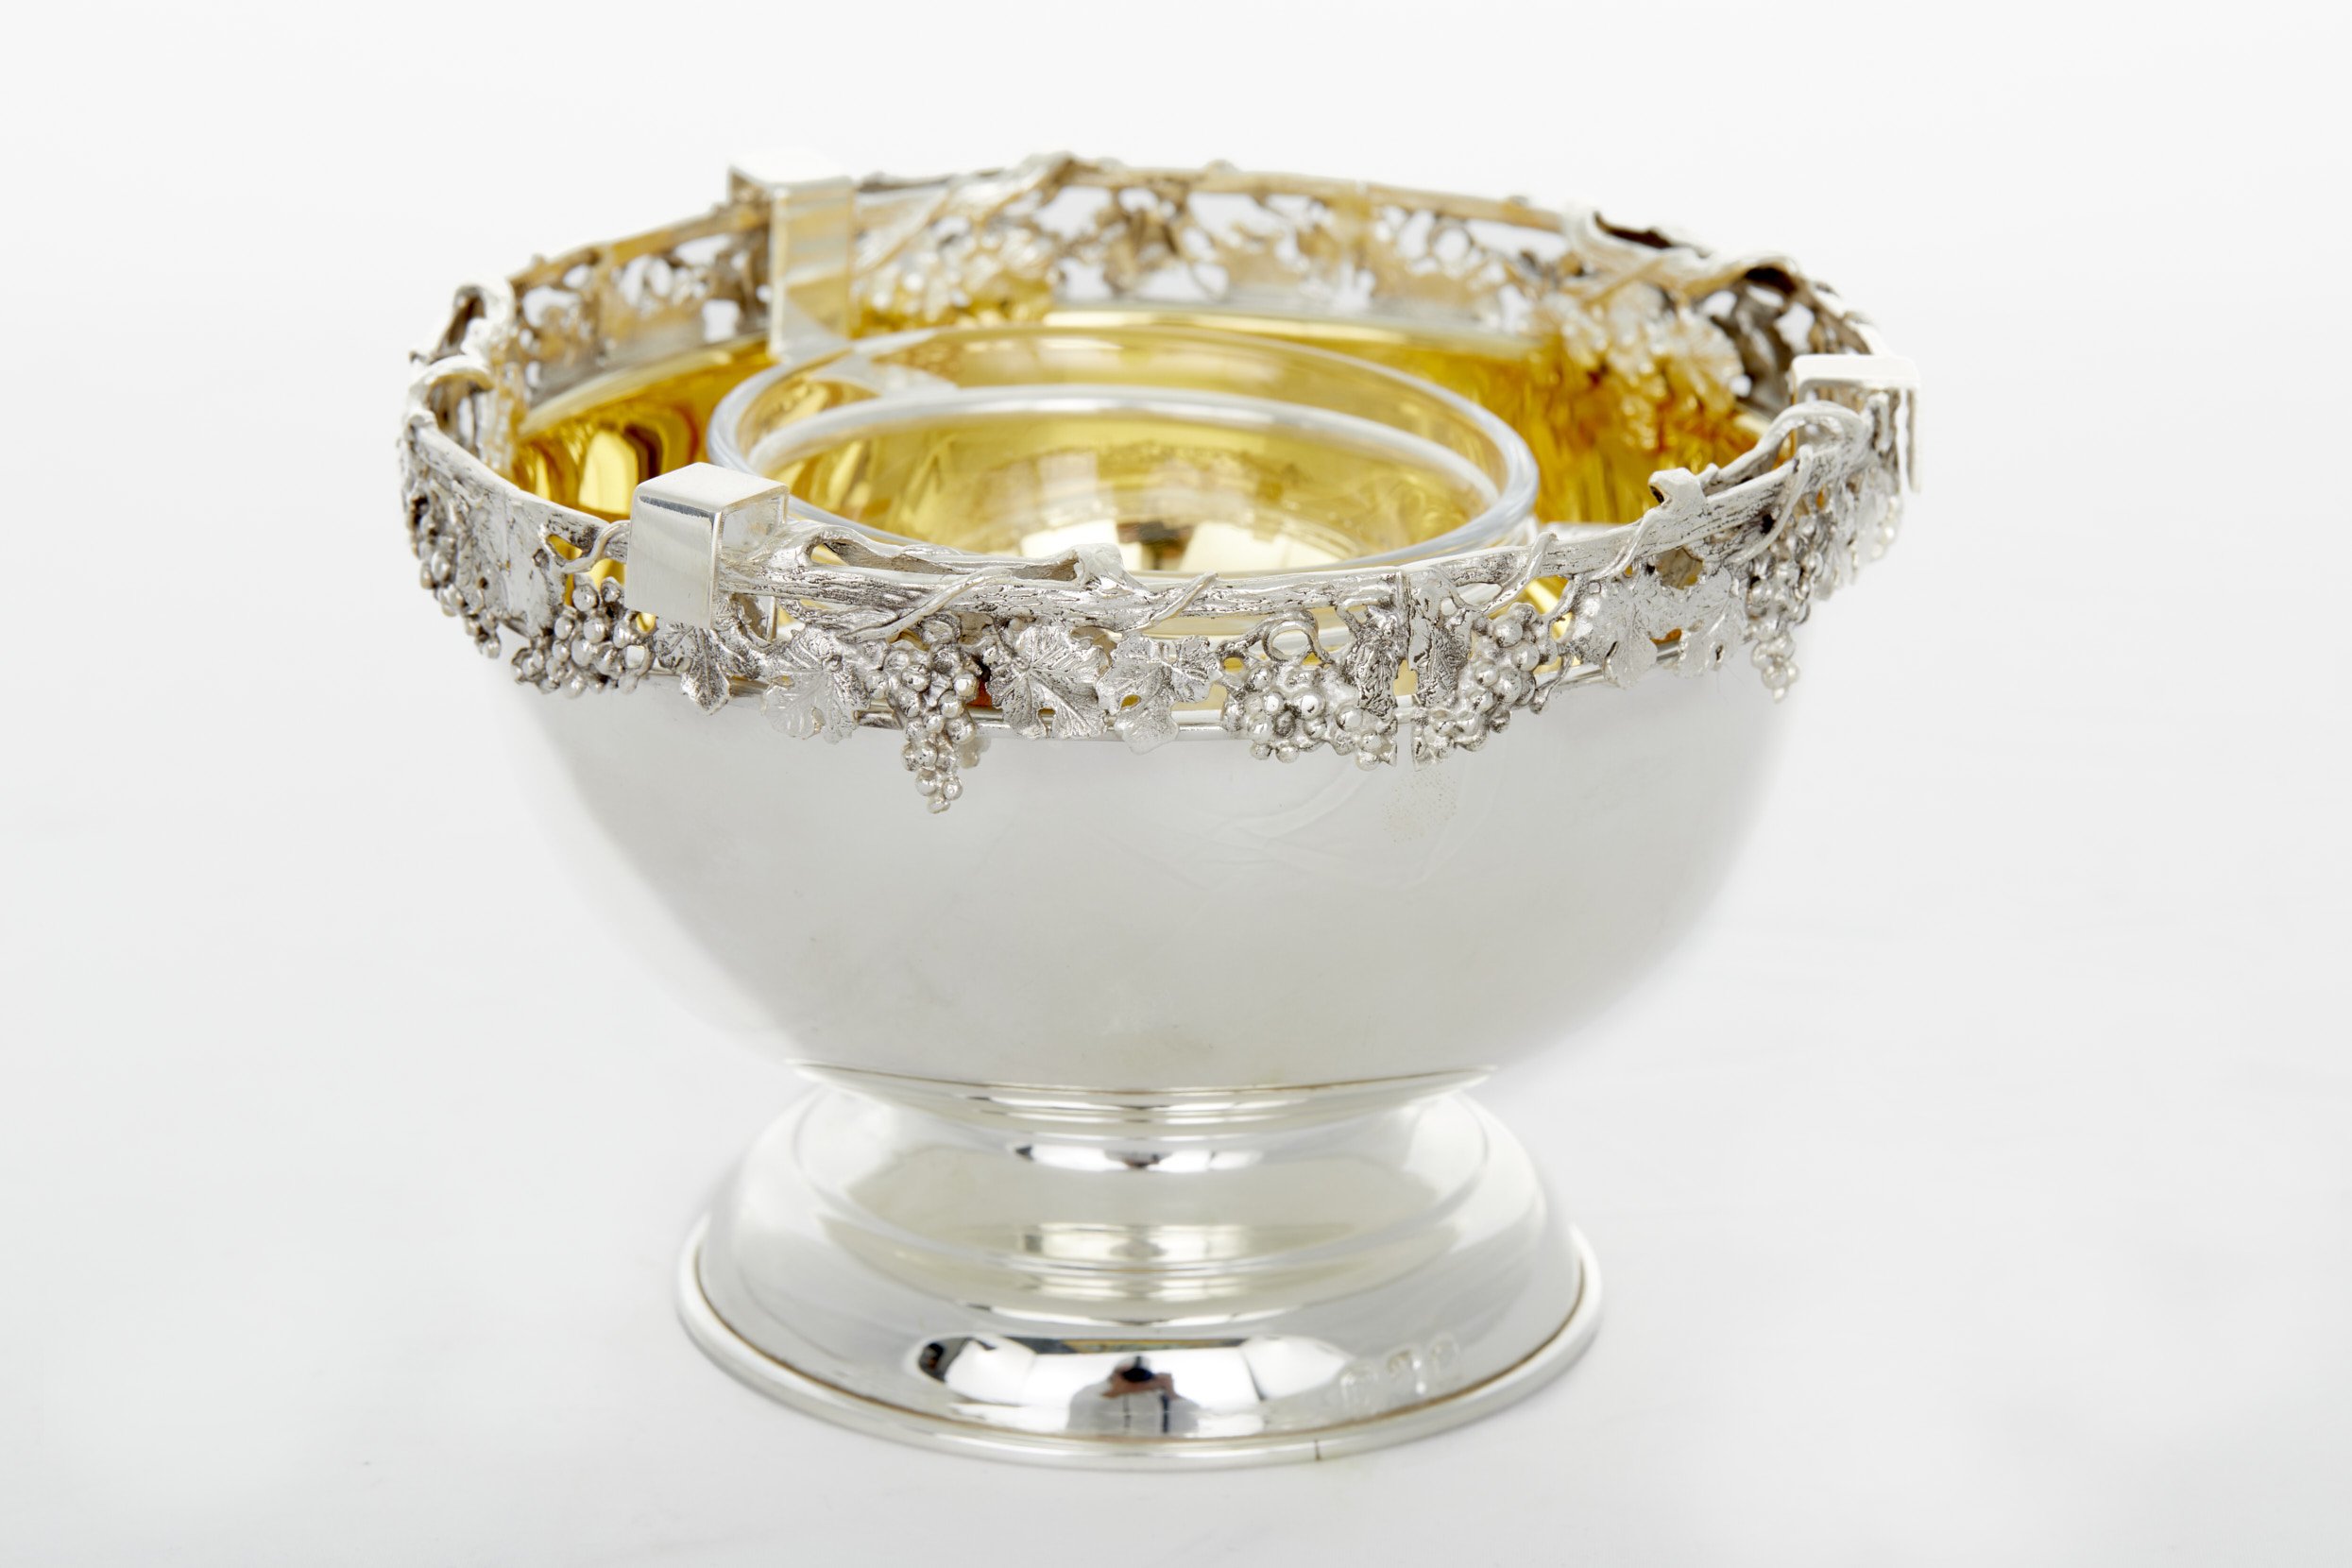 Sterling Silver / Gilt Tableware Caviar Service — La Maison Supreme Ltd.